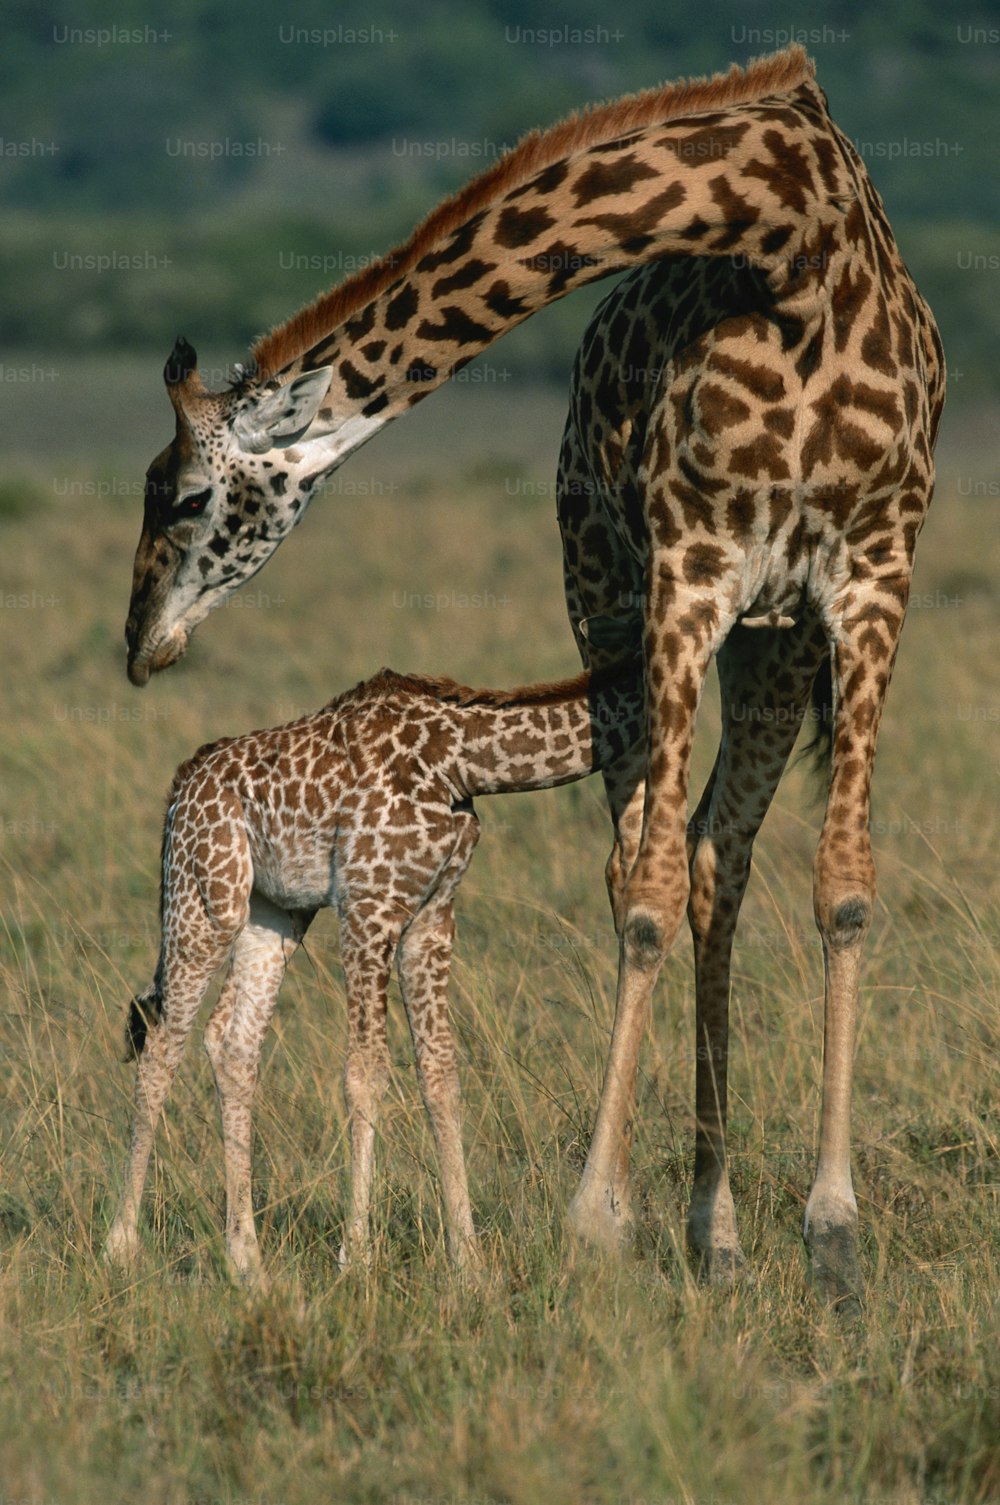 a baby giraffe standing next to an adult giraffe